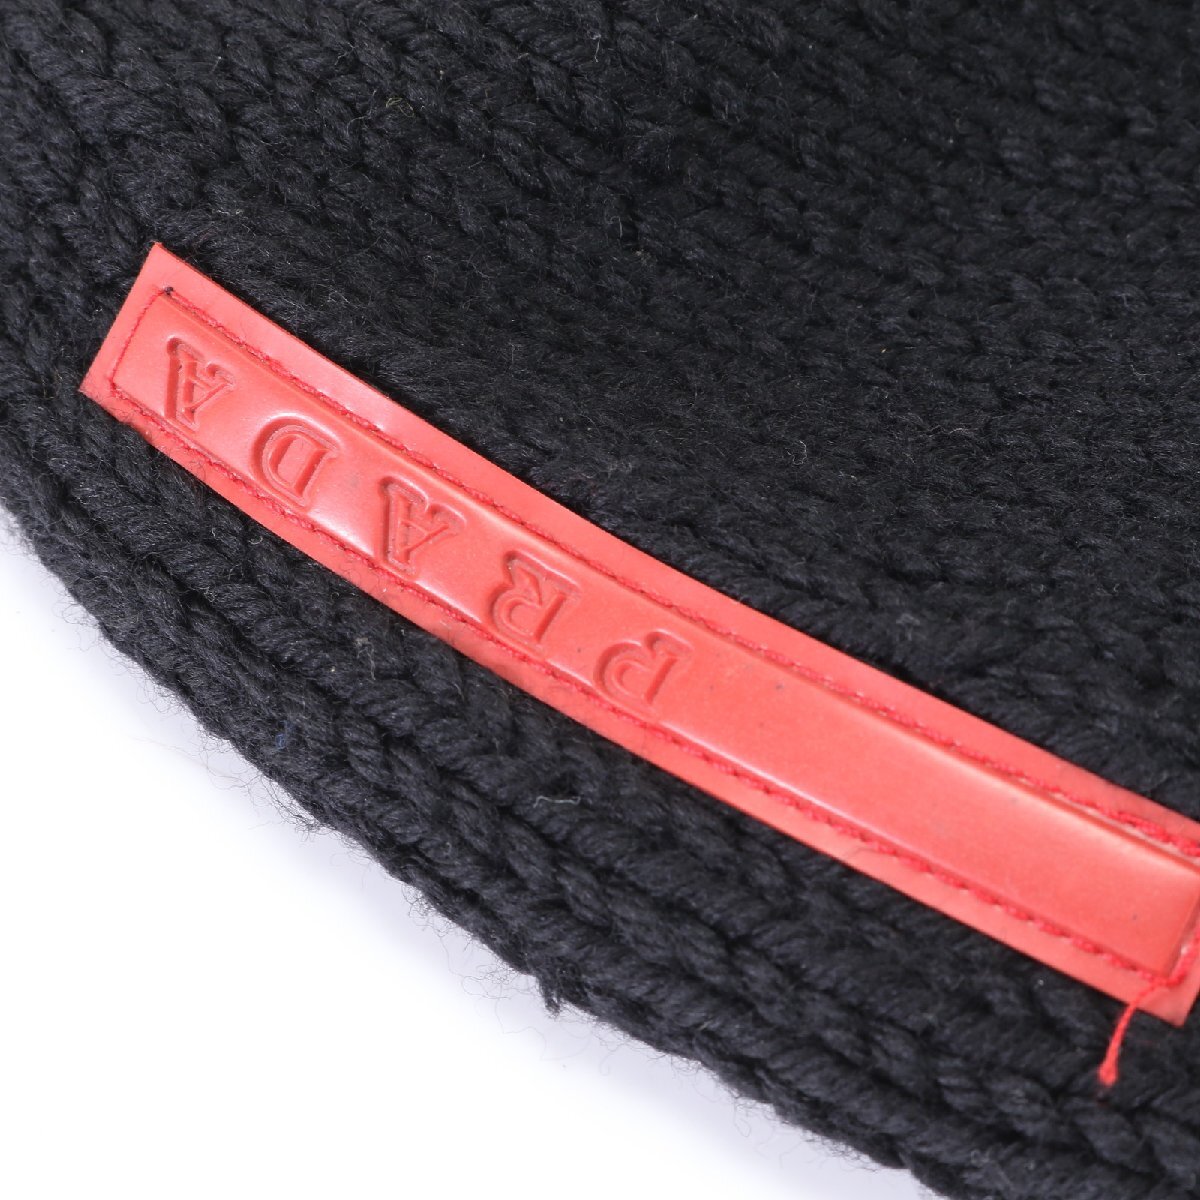 1 иен # прекрасный товар # Prada спорт Beanie вязаная шапка вязаная шапка черный чёрный шляпа одежда мужской женский EEM U17-9